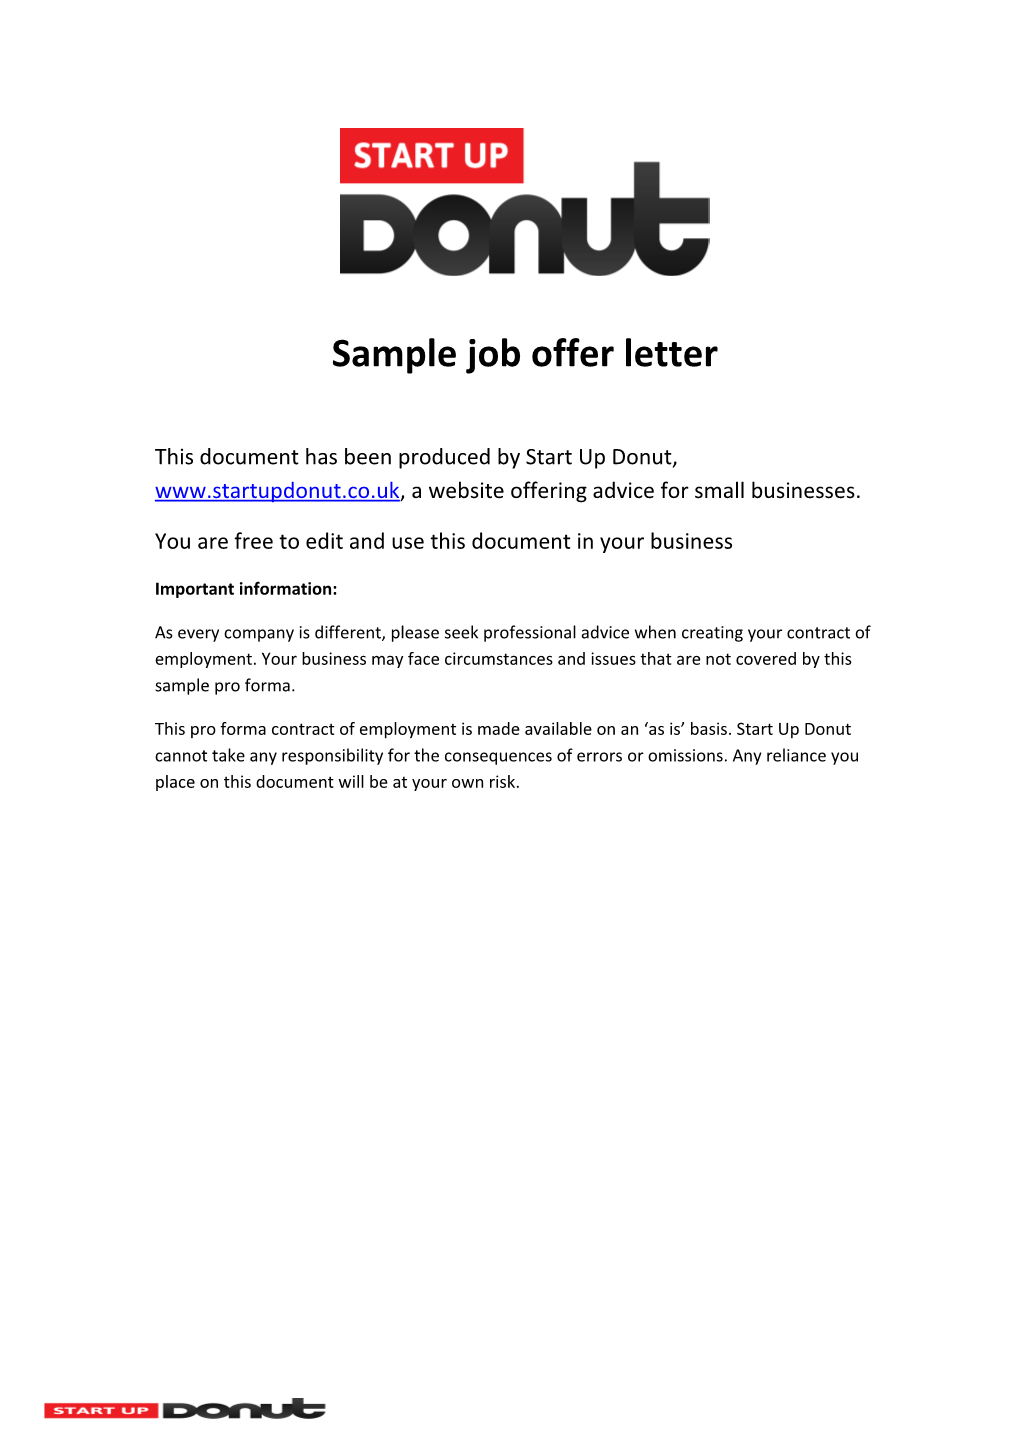 Sample Job Offer Letter